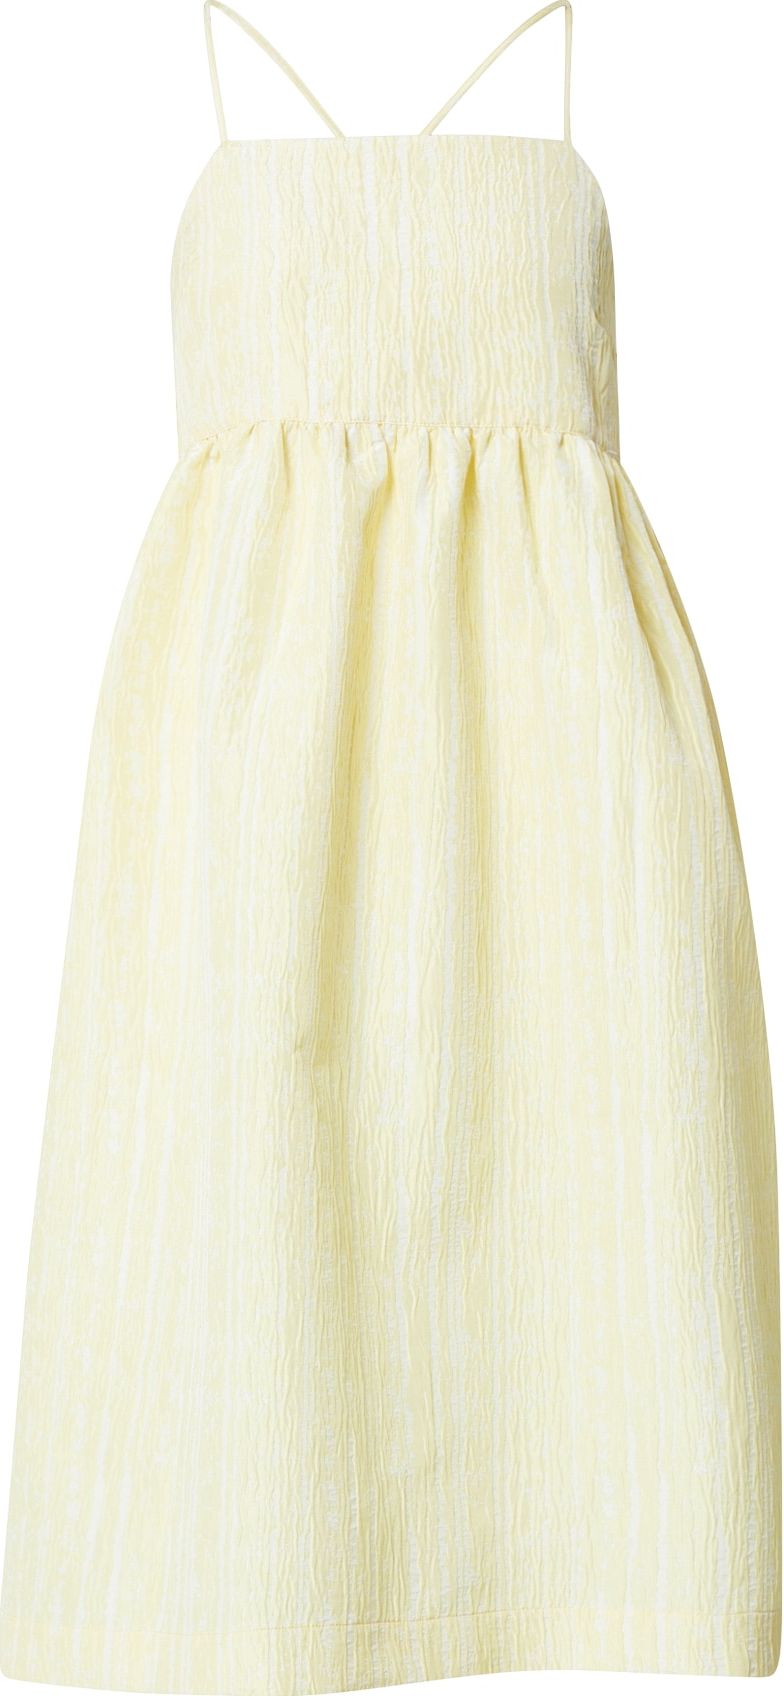 Crās Letní šaty 'Lexicras' světle žlutá / bílá